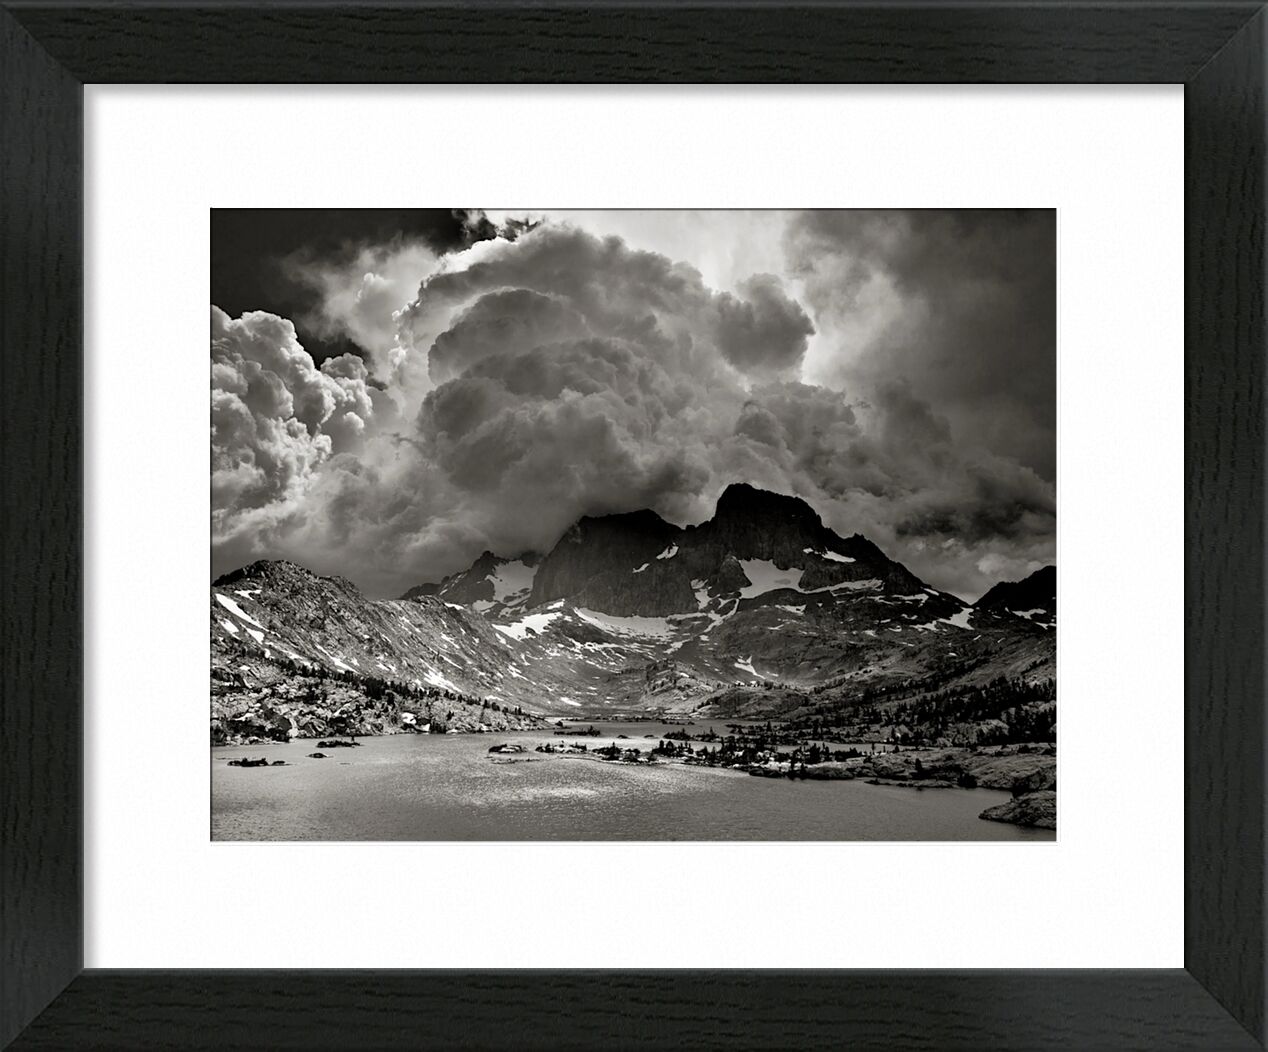 Garnet Lake, California - ANSEL ADAMS von Bildende Kunst, Prodi Art, Sturm, Amerika, vereinigte Staaten, Kalifornien, ANSEL ADAMS, See, Berge, Wolken, Wald, Bäume, Baum